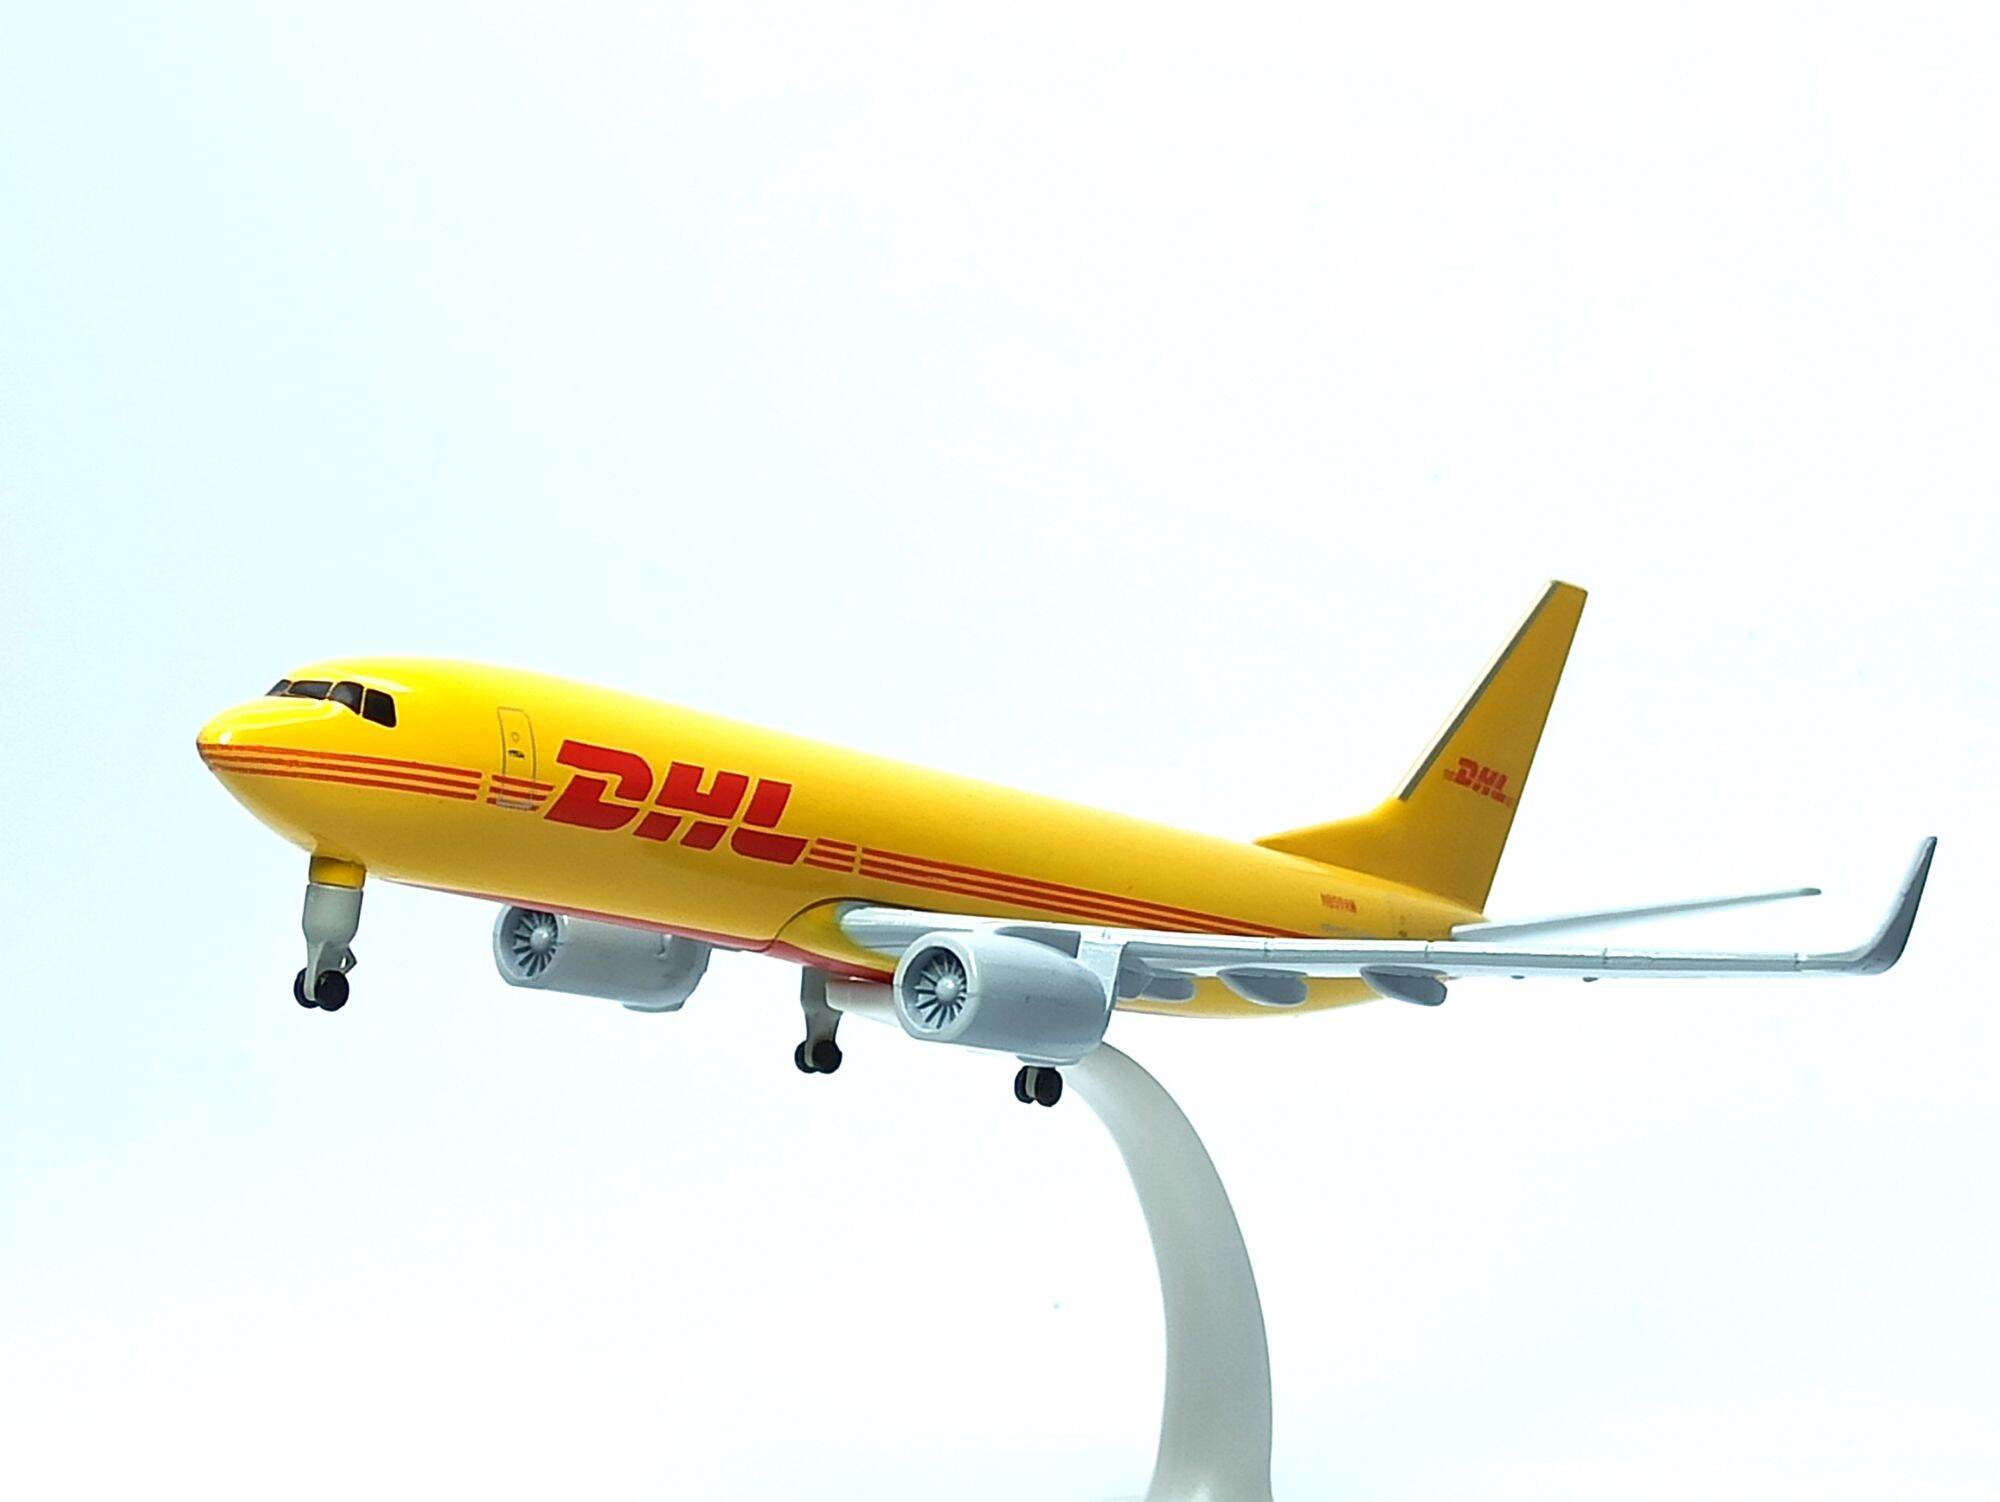 Tổng hợp 85+ hình về máy bay mô hình DHL 46cm: Với bộ sưu tập 85+ hình ảnh về chiếc máy bay mô hình DHL 46cm tuyệt đẹp, daotaonec sẽ cho bạn khám phá cả một thế giới về các loại máy bay và thành tựu kỹ thuật trong ngành hàng không!